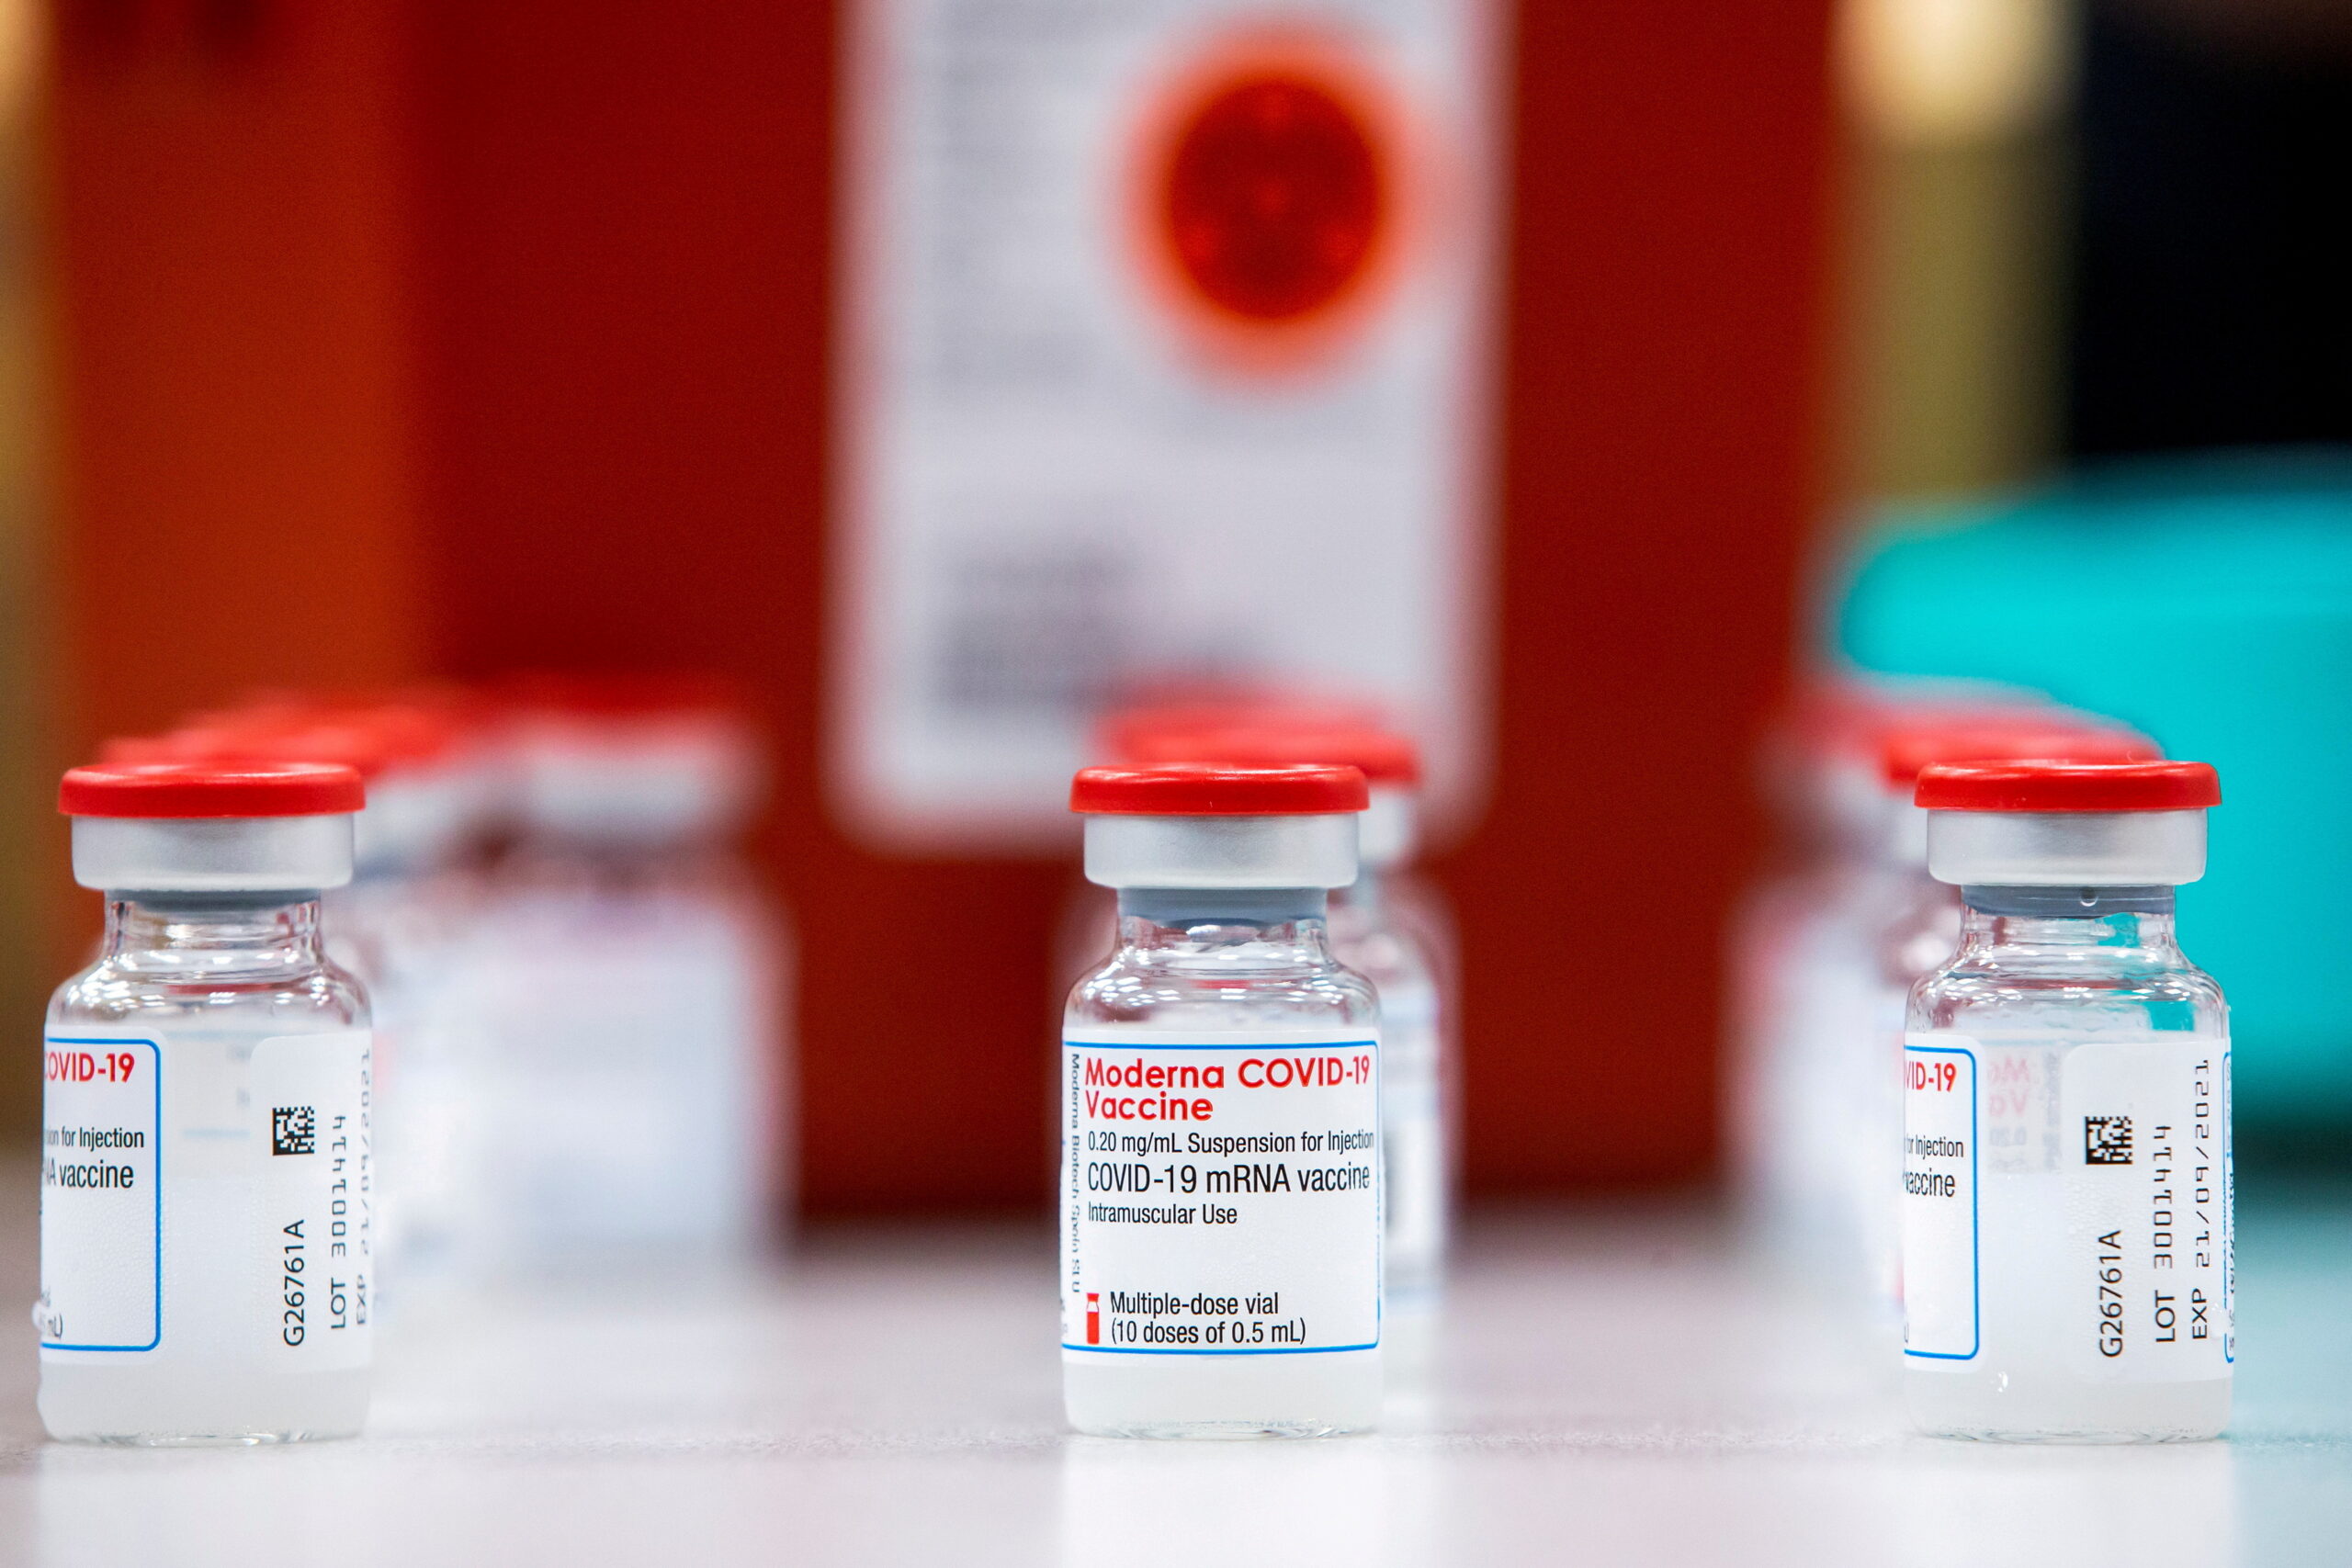 ฝรั่งเศส แนะนำคนอายุต่ำกว่า 30 ปี เลี่ยงฉีดวัคซีนโมเดอร์นา – ต่างประเทศ